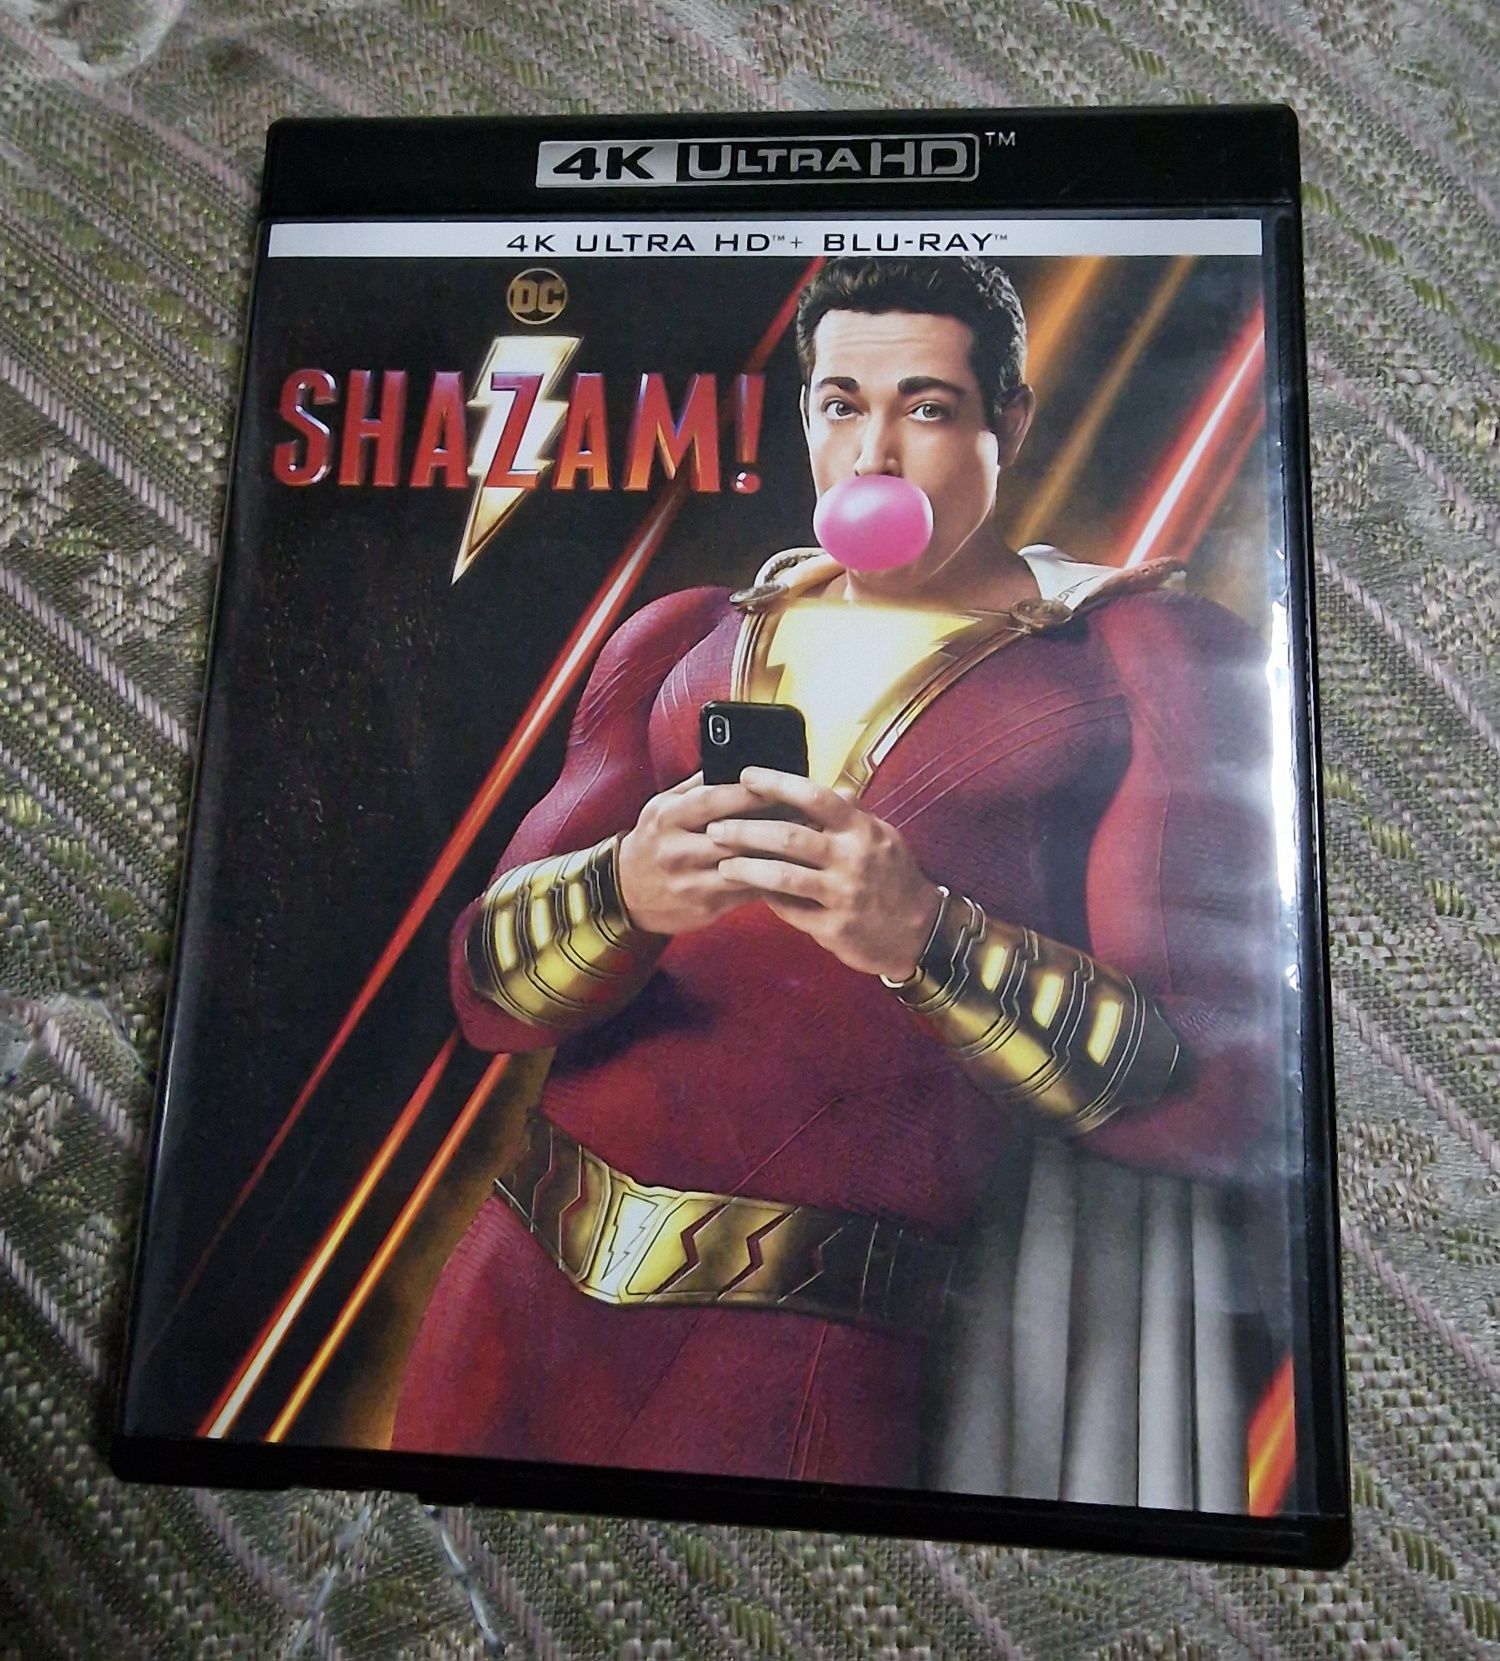 Shazam 4k Blu-Ray